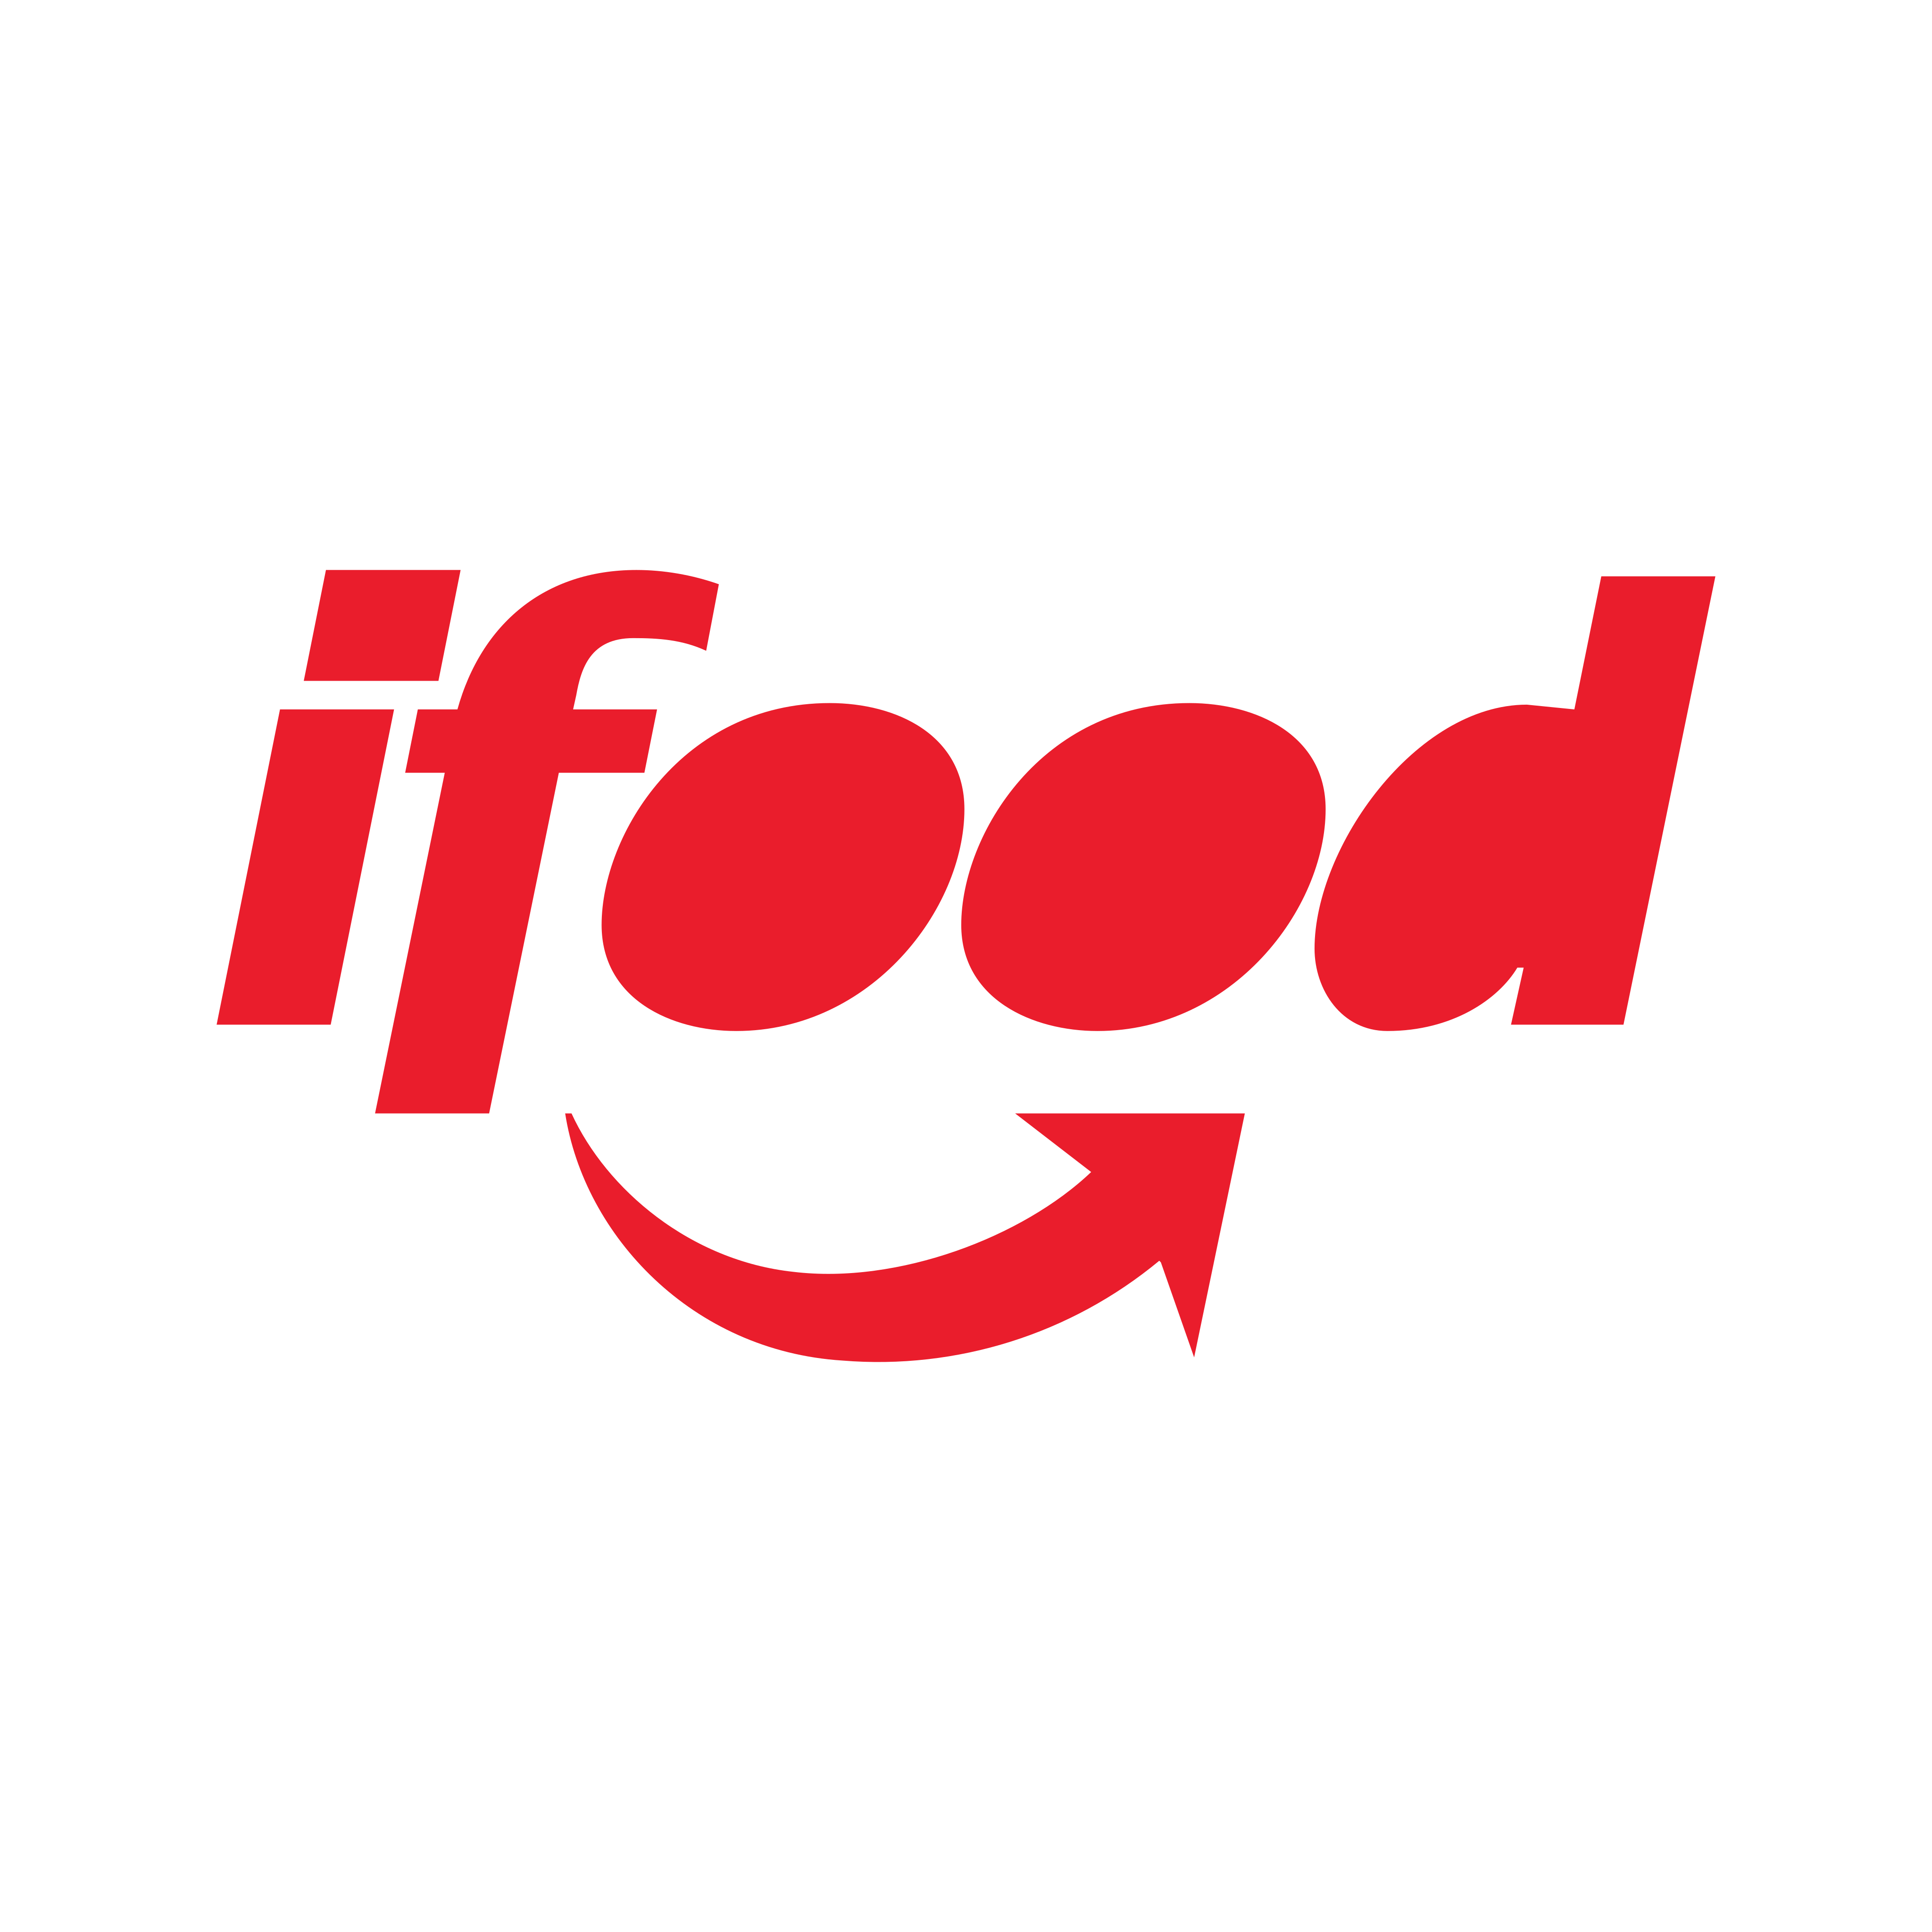 ifood logo PNG.